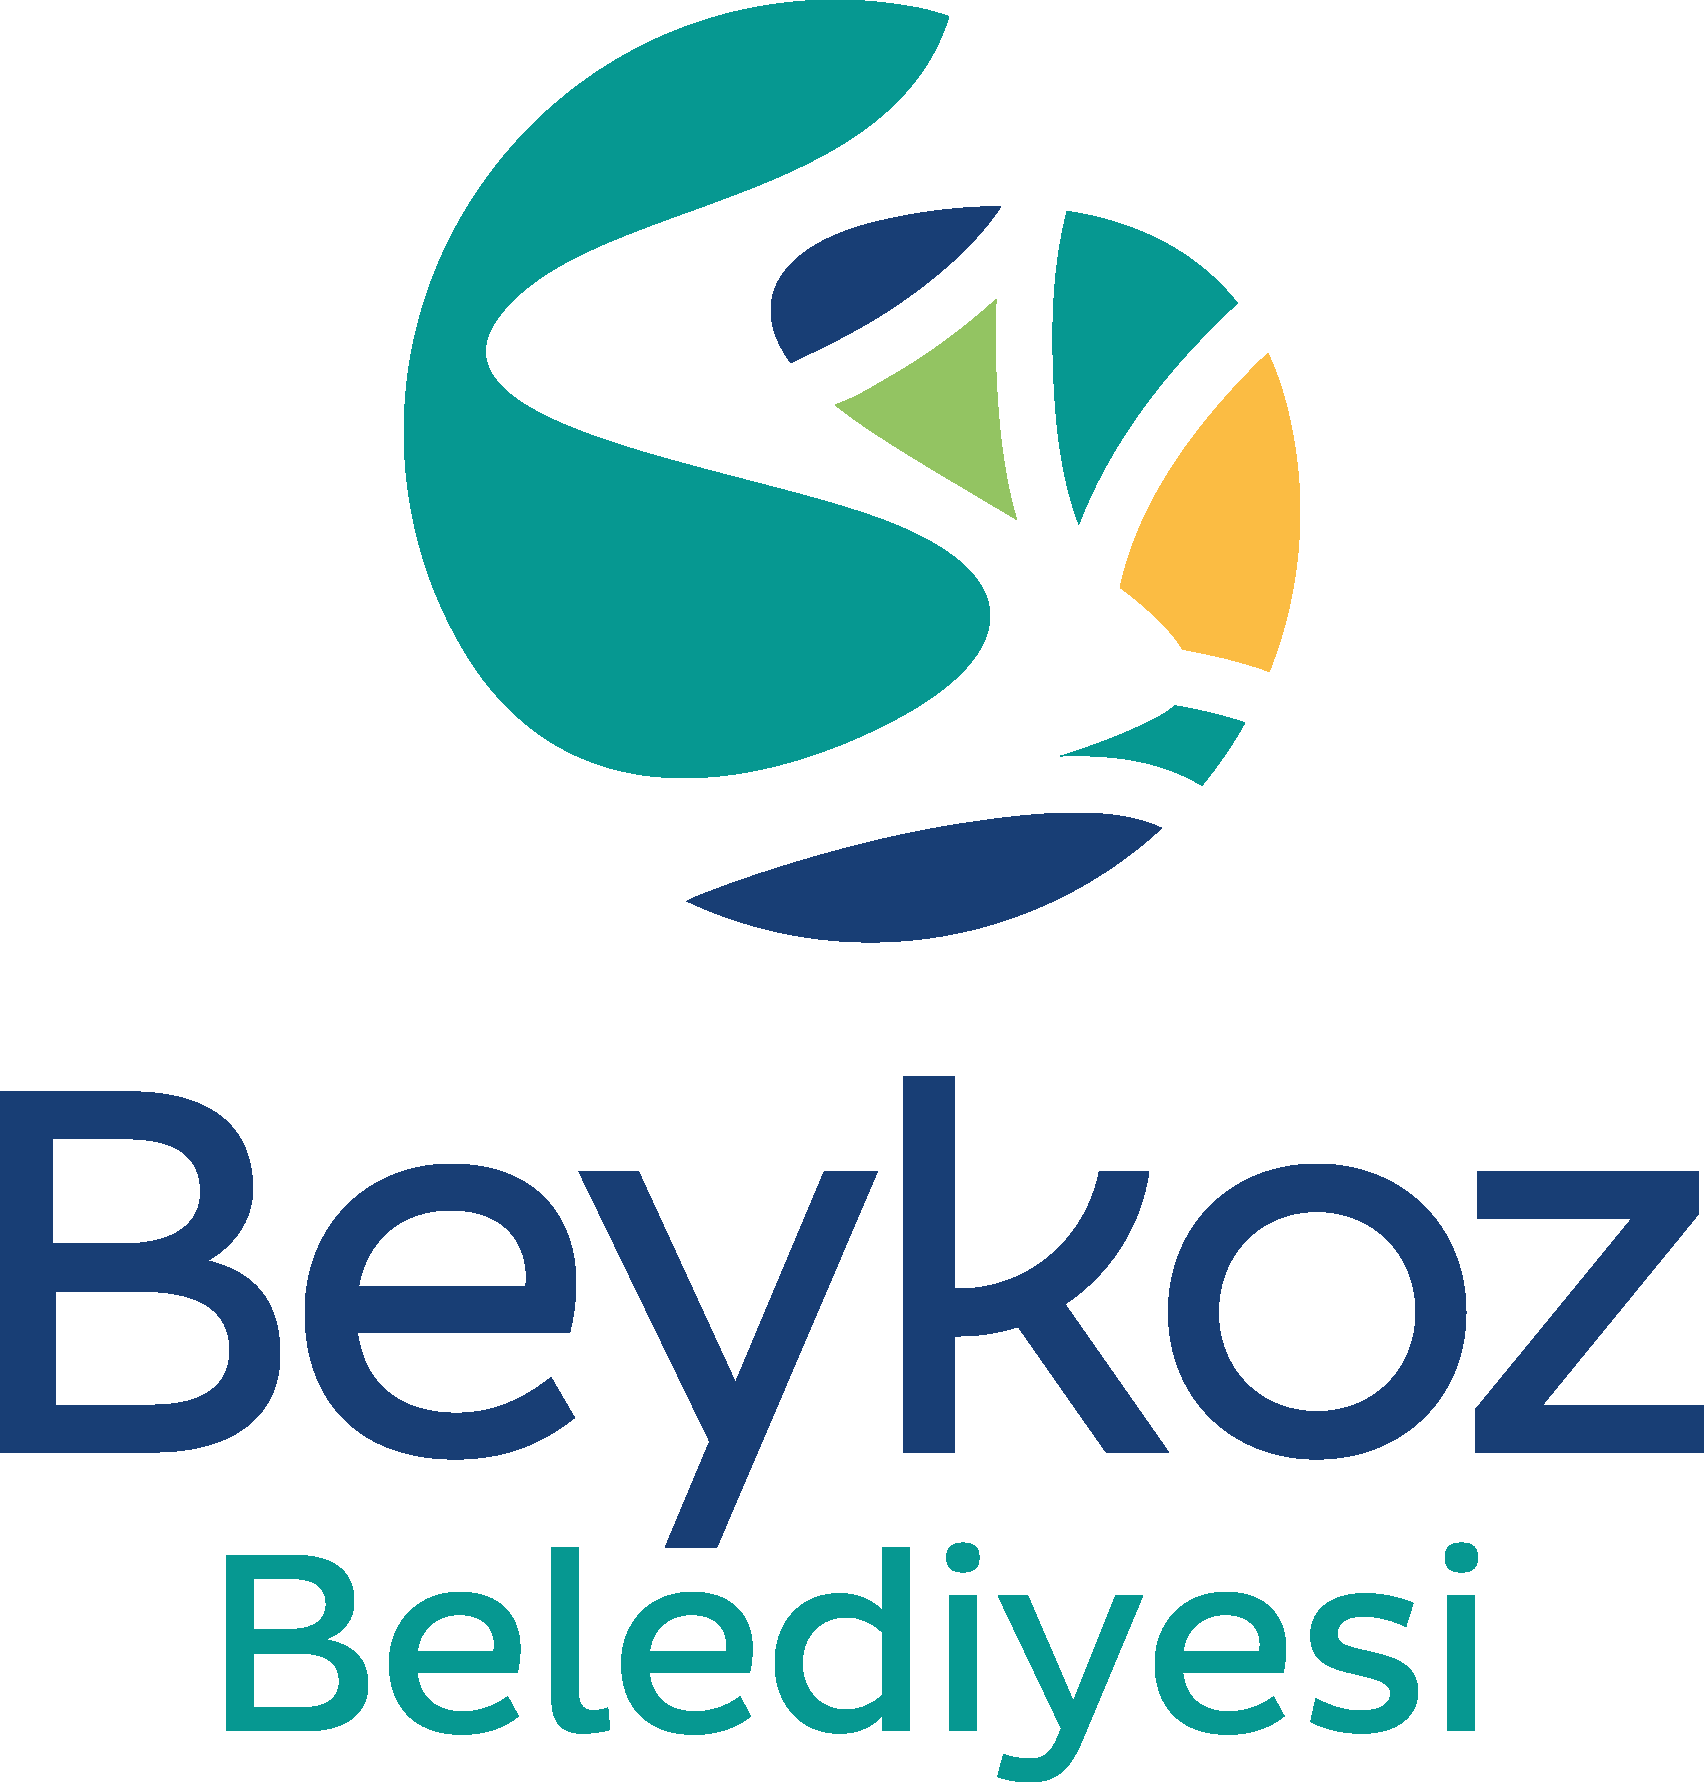 Beykoz Belediyesi Logo